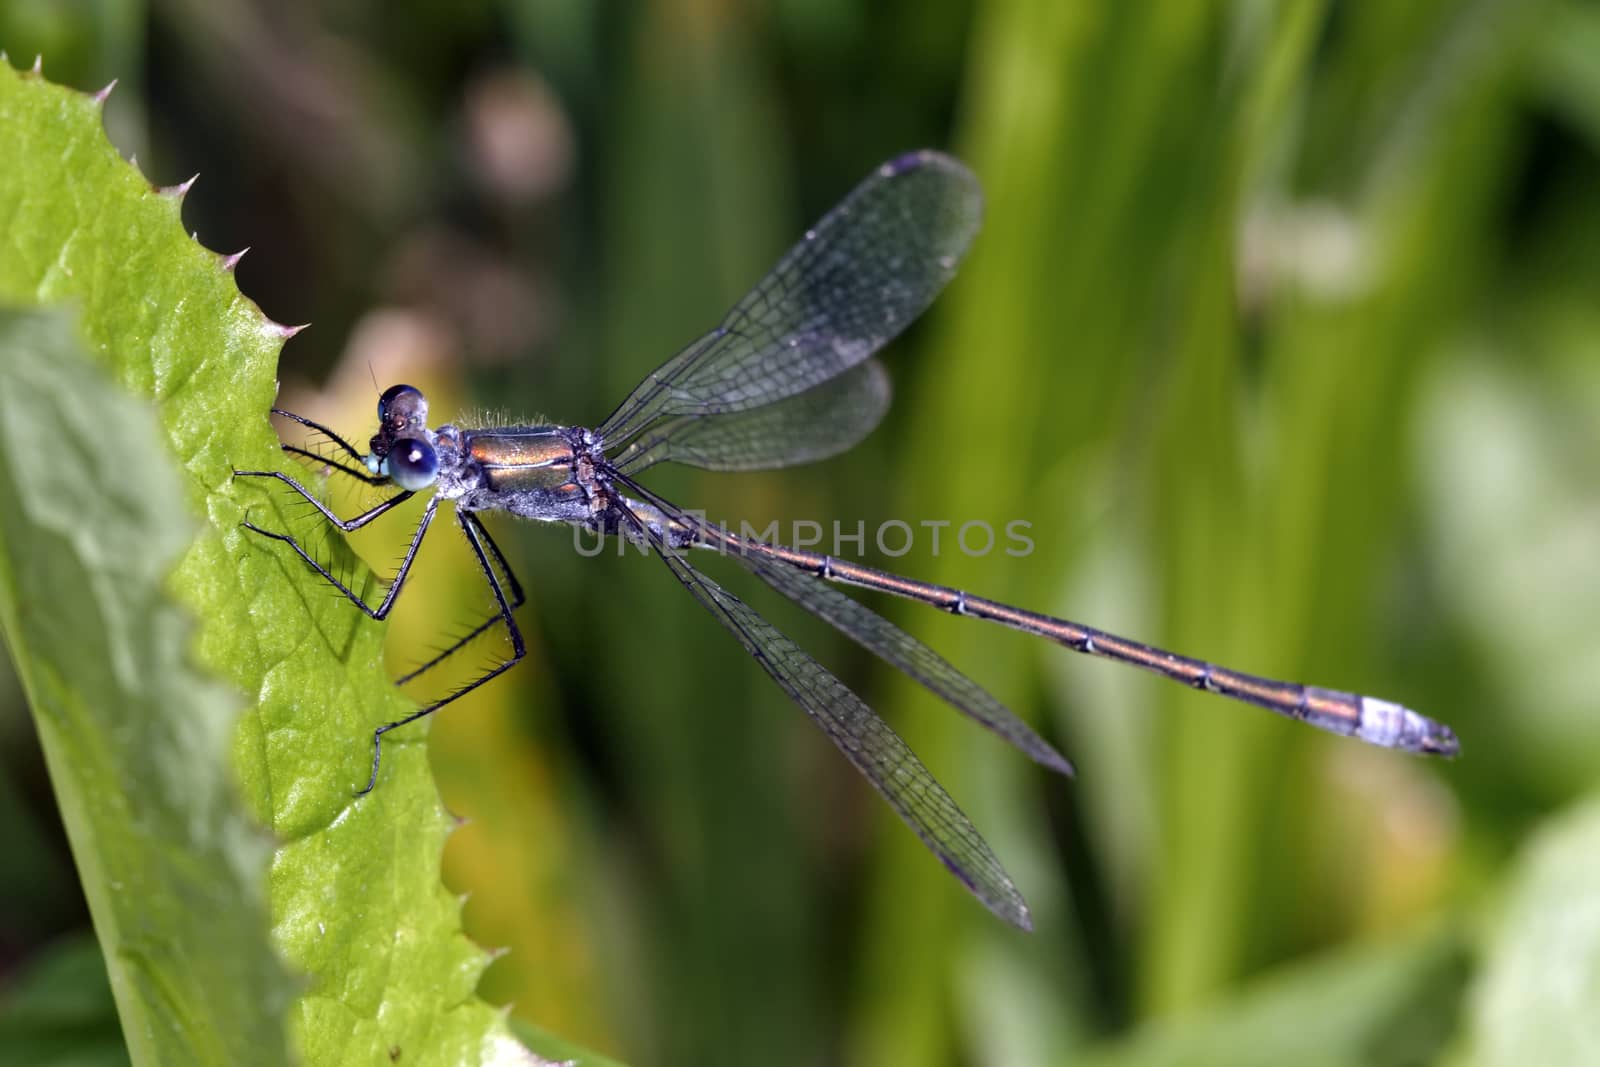 Pretty blue dragonfly sitting on a leaf of grass.